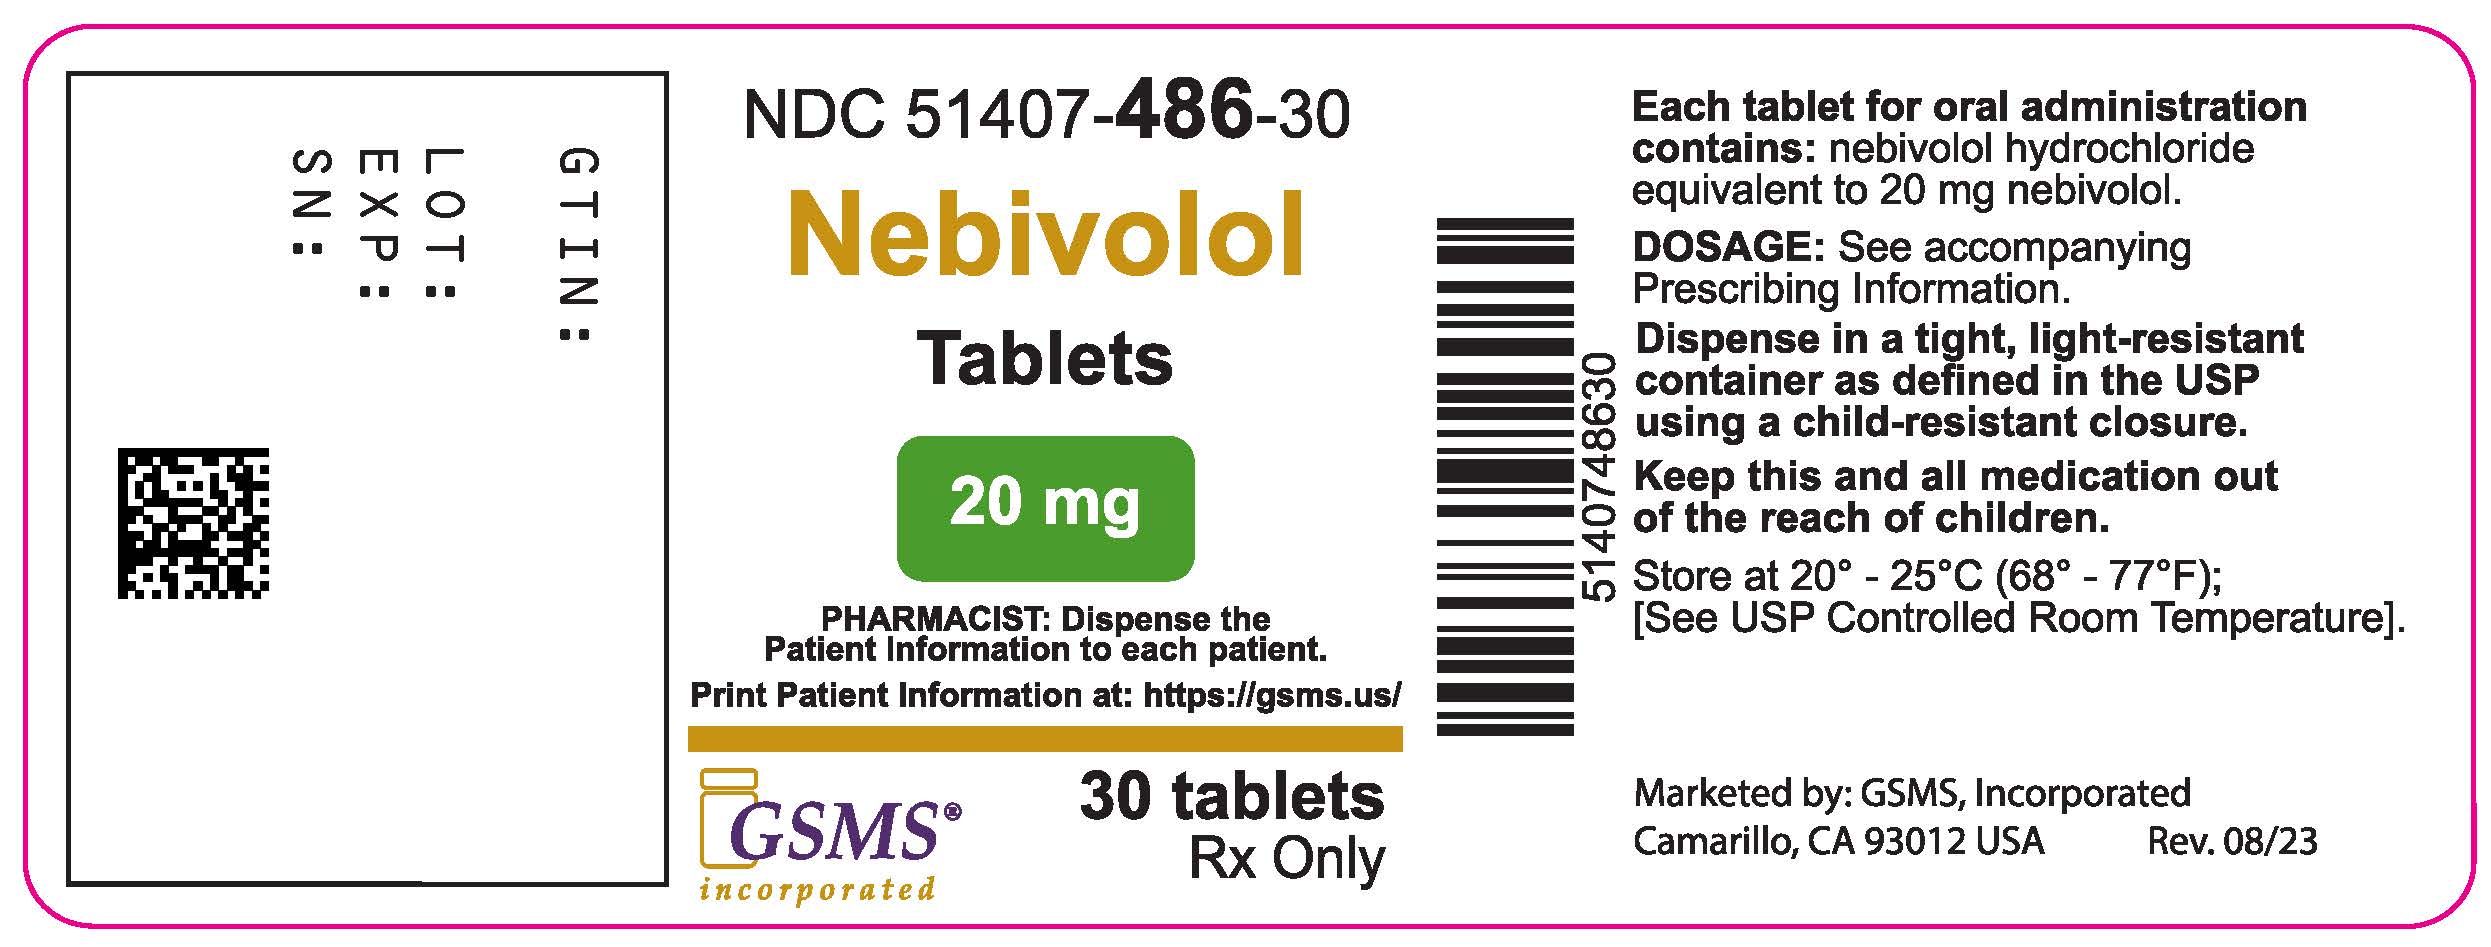 51407-486-30LB - Nevibolol Tablet - Rev. 0823.jpg